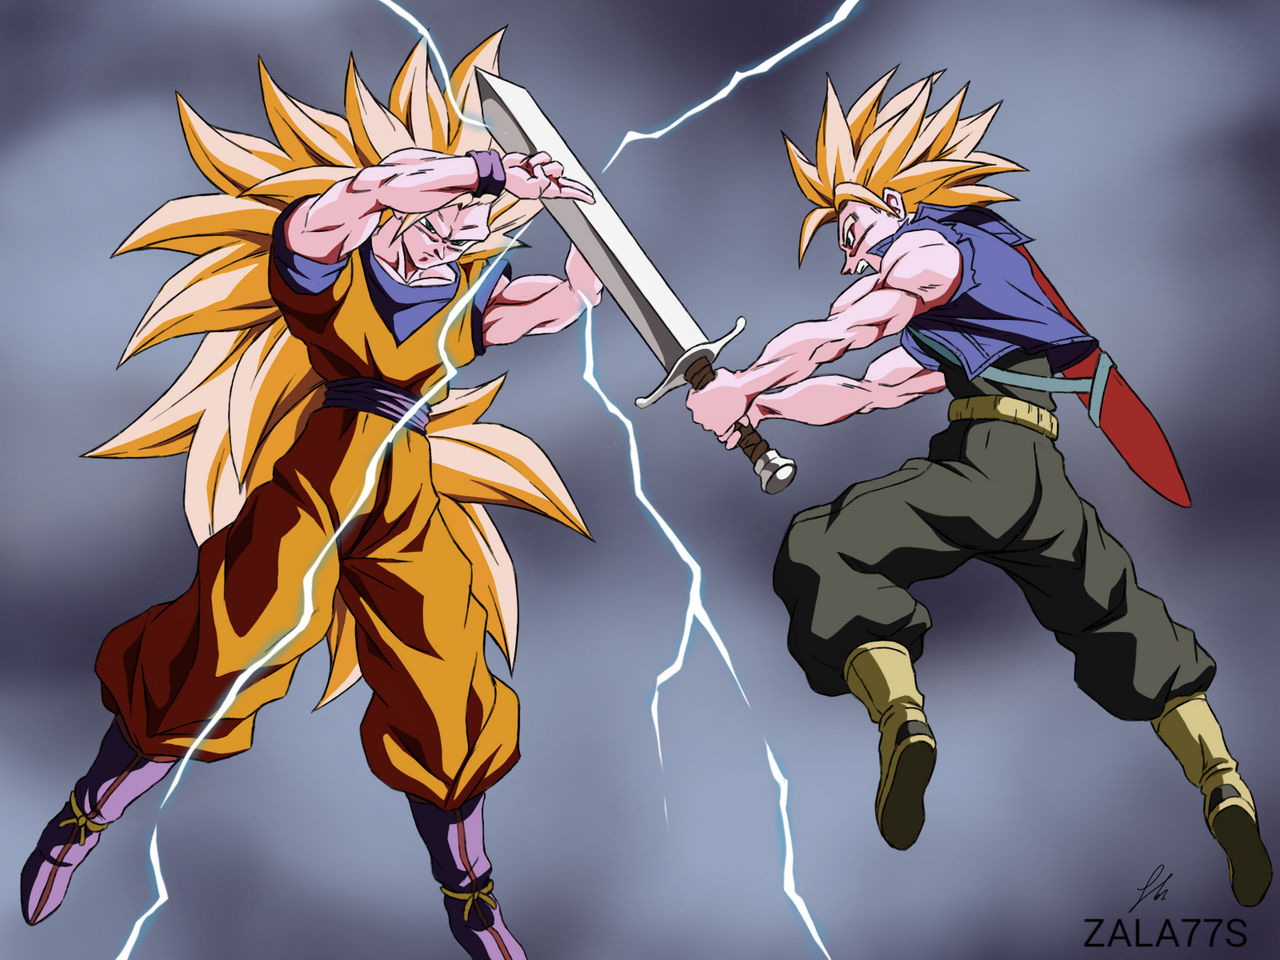 Goku ssj3 vs Trunks ! by zala77s on DeviantArt